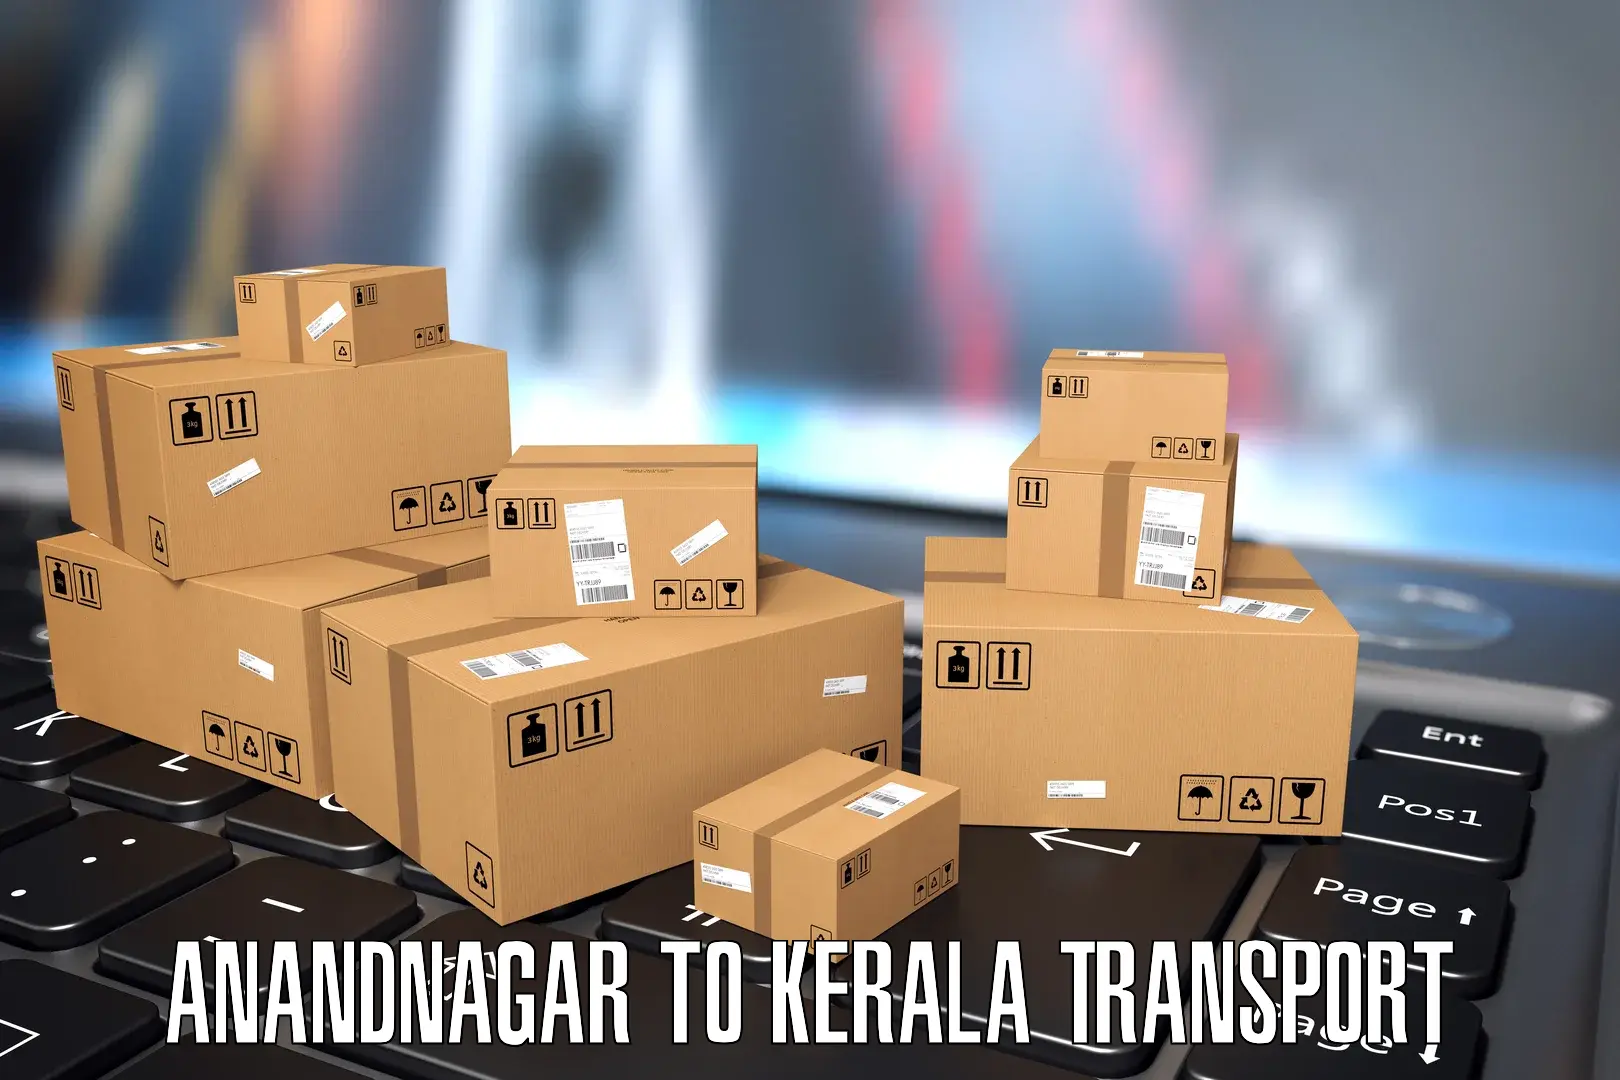 Furniture transport service Anandnagar to Trivandrum